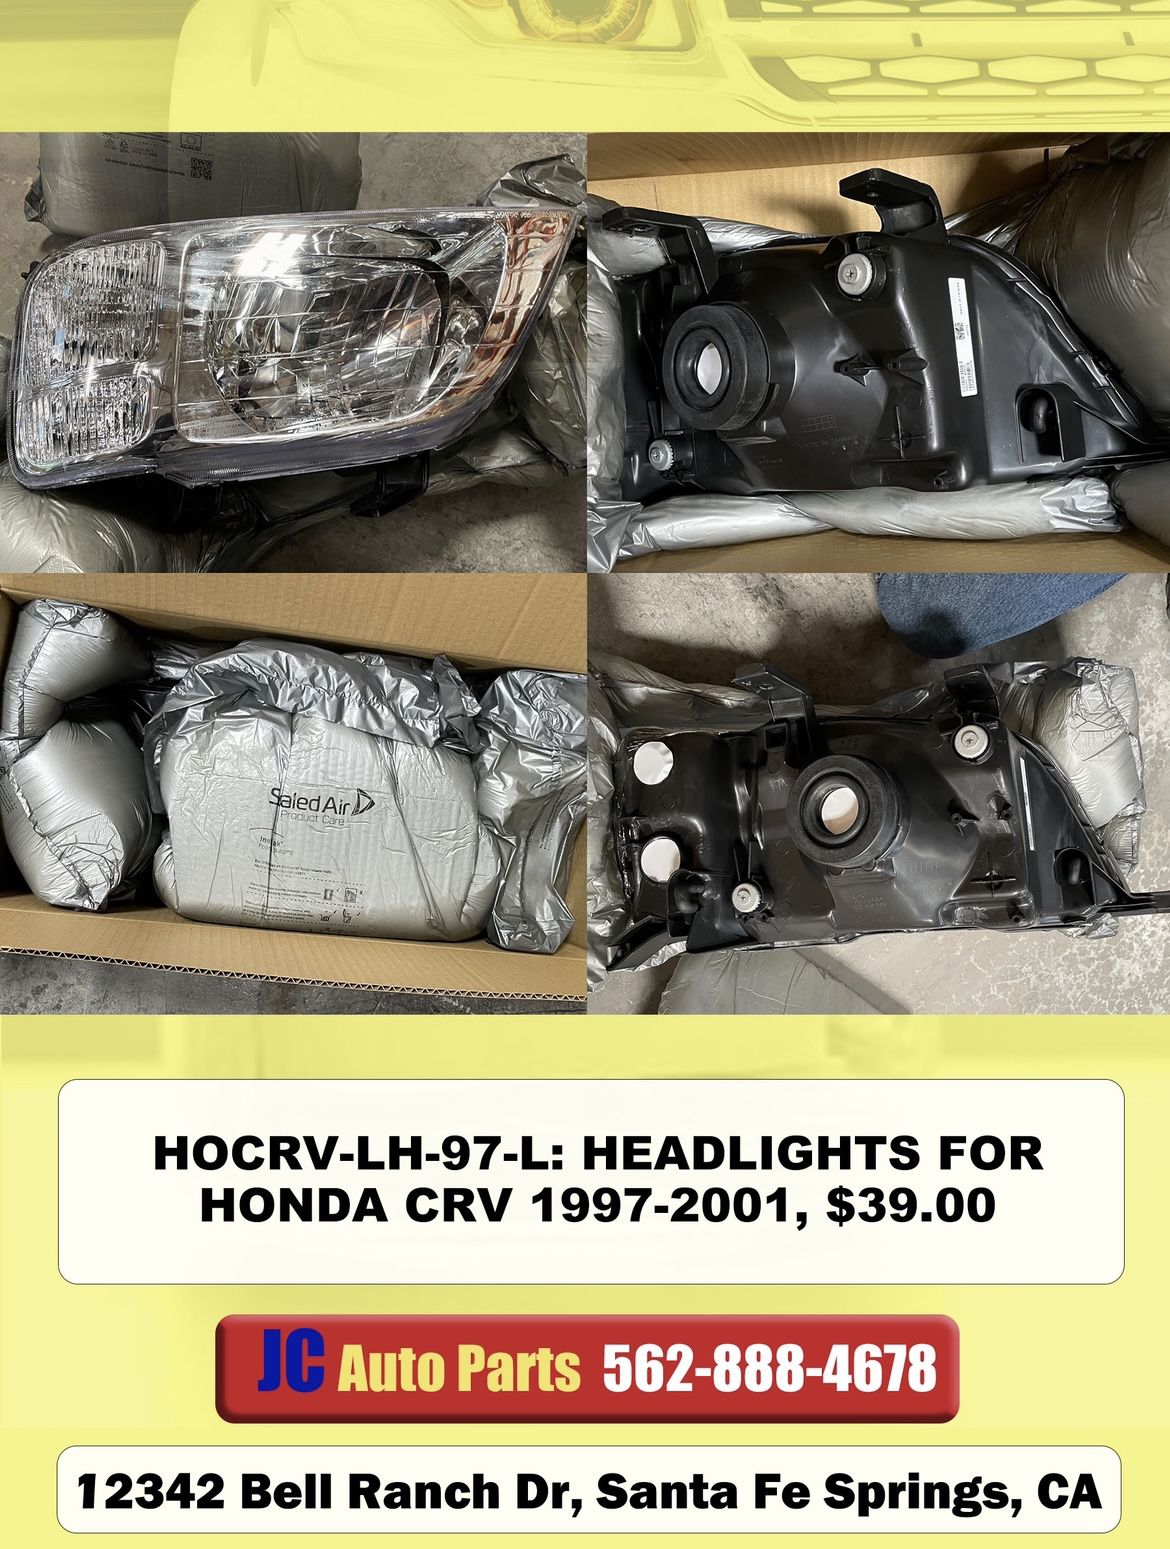 HEADLIGHTS FOR HONDA CRV 1997 1998 1999 2000 2001 ( HOCRV-LH-97-L )